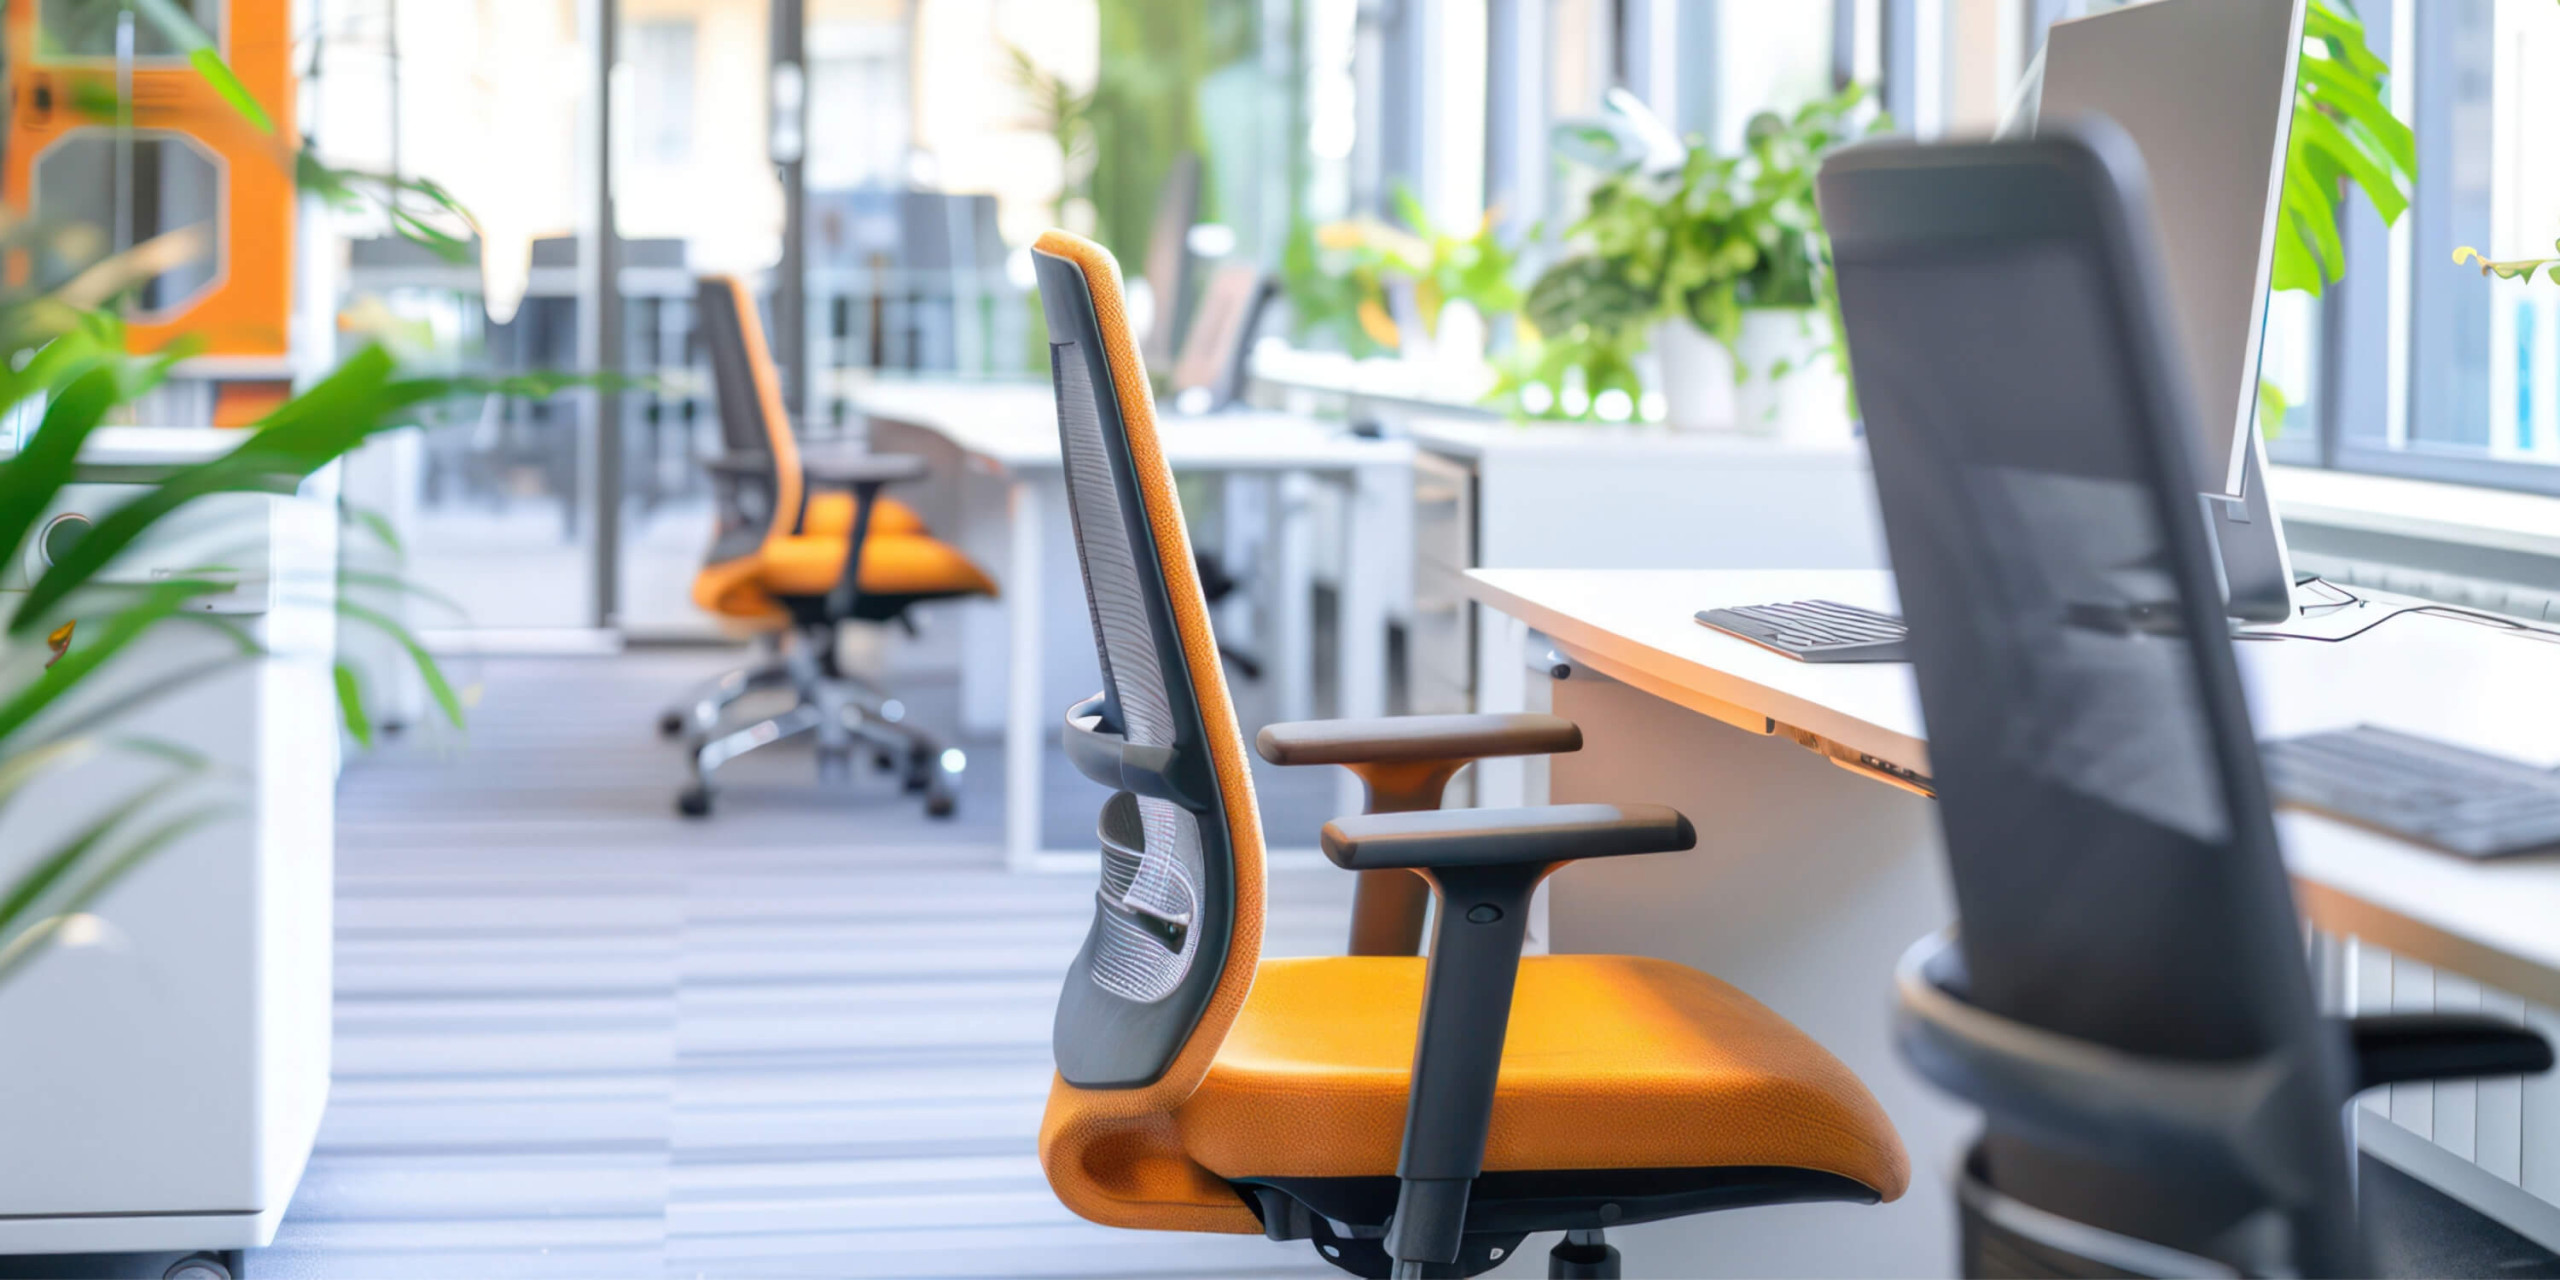 En Mobiliar, sabemos que la comodidad y la ergonomía son fundamentales para la salud y la productividad de los trabajadores. Por eso, ofrecemos una amplia gama de sillas ergonómicas ajustables que se adaptan a las necesidades de cada individuo.